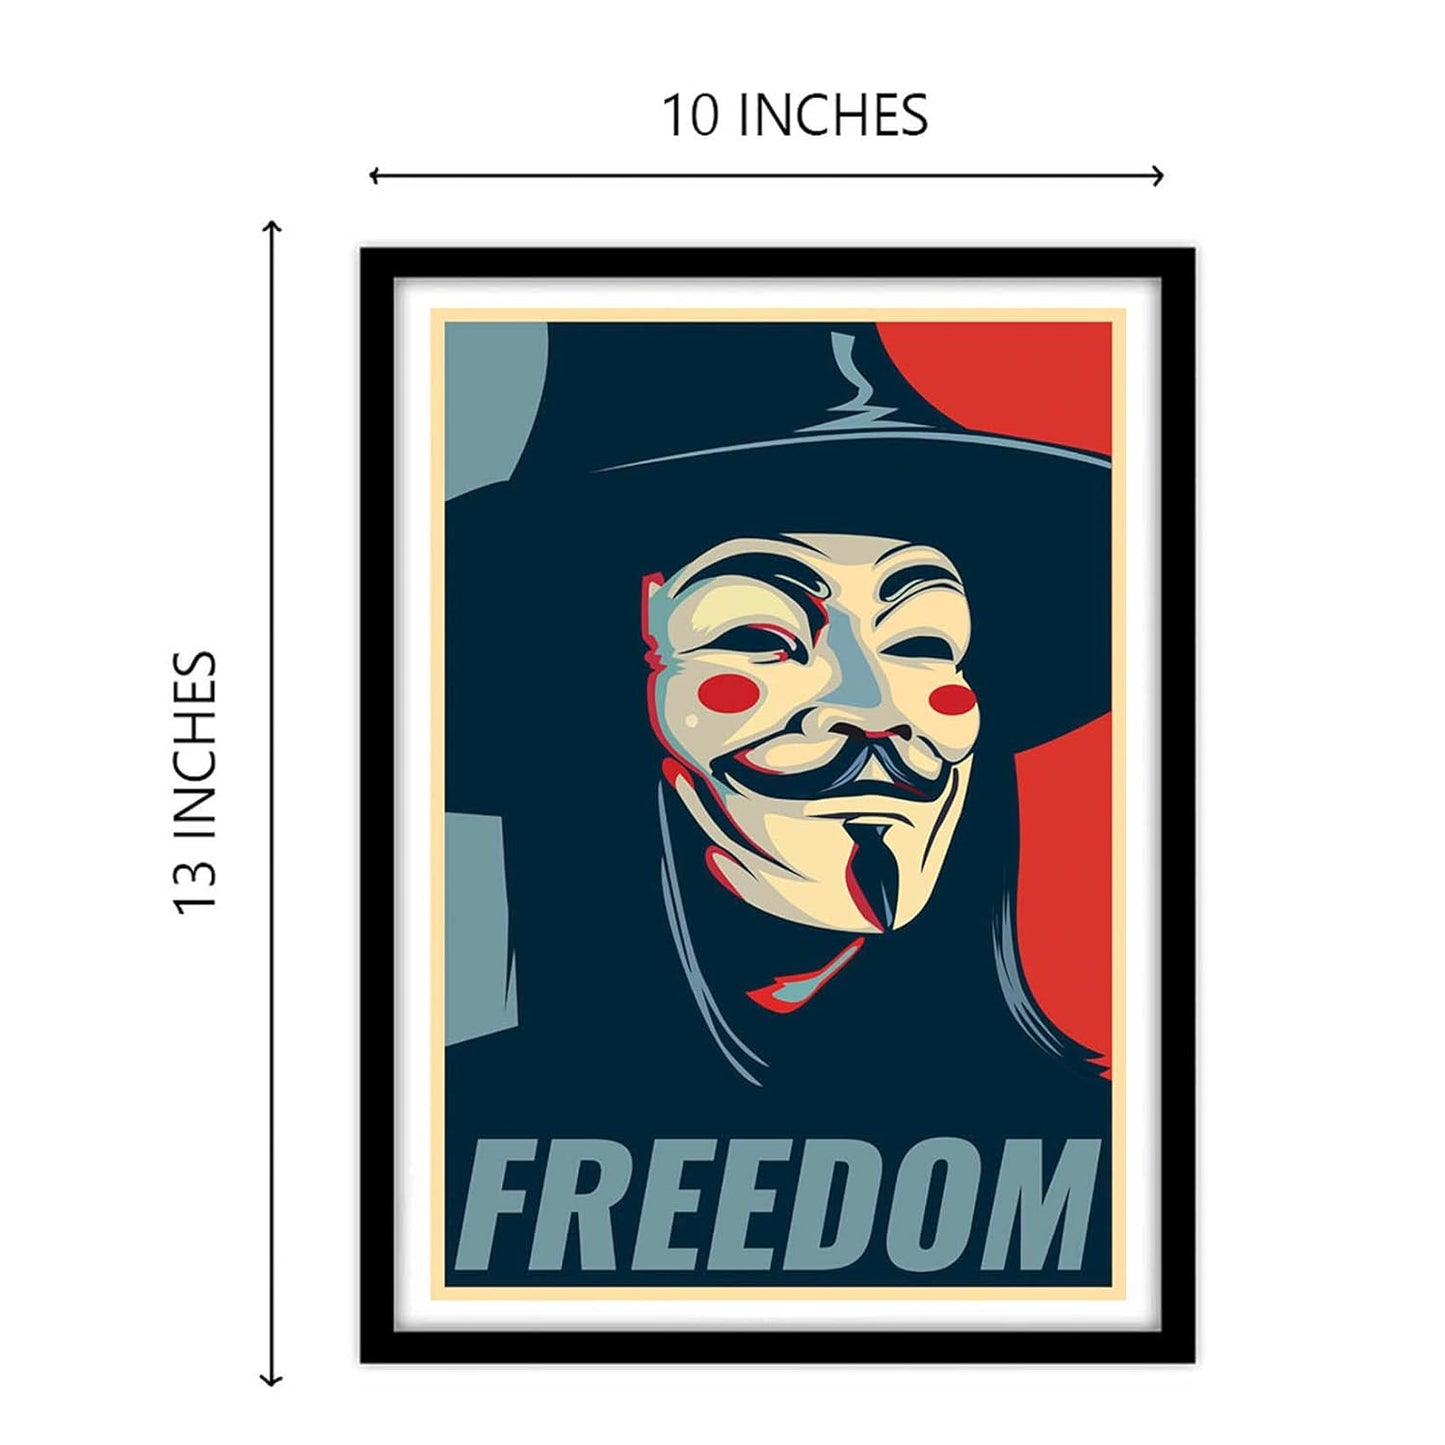 V For Vendetta Movie Art work